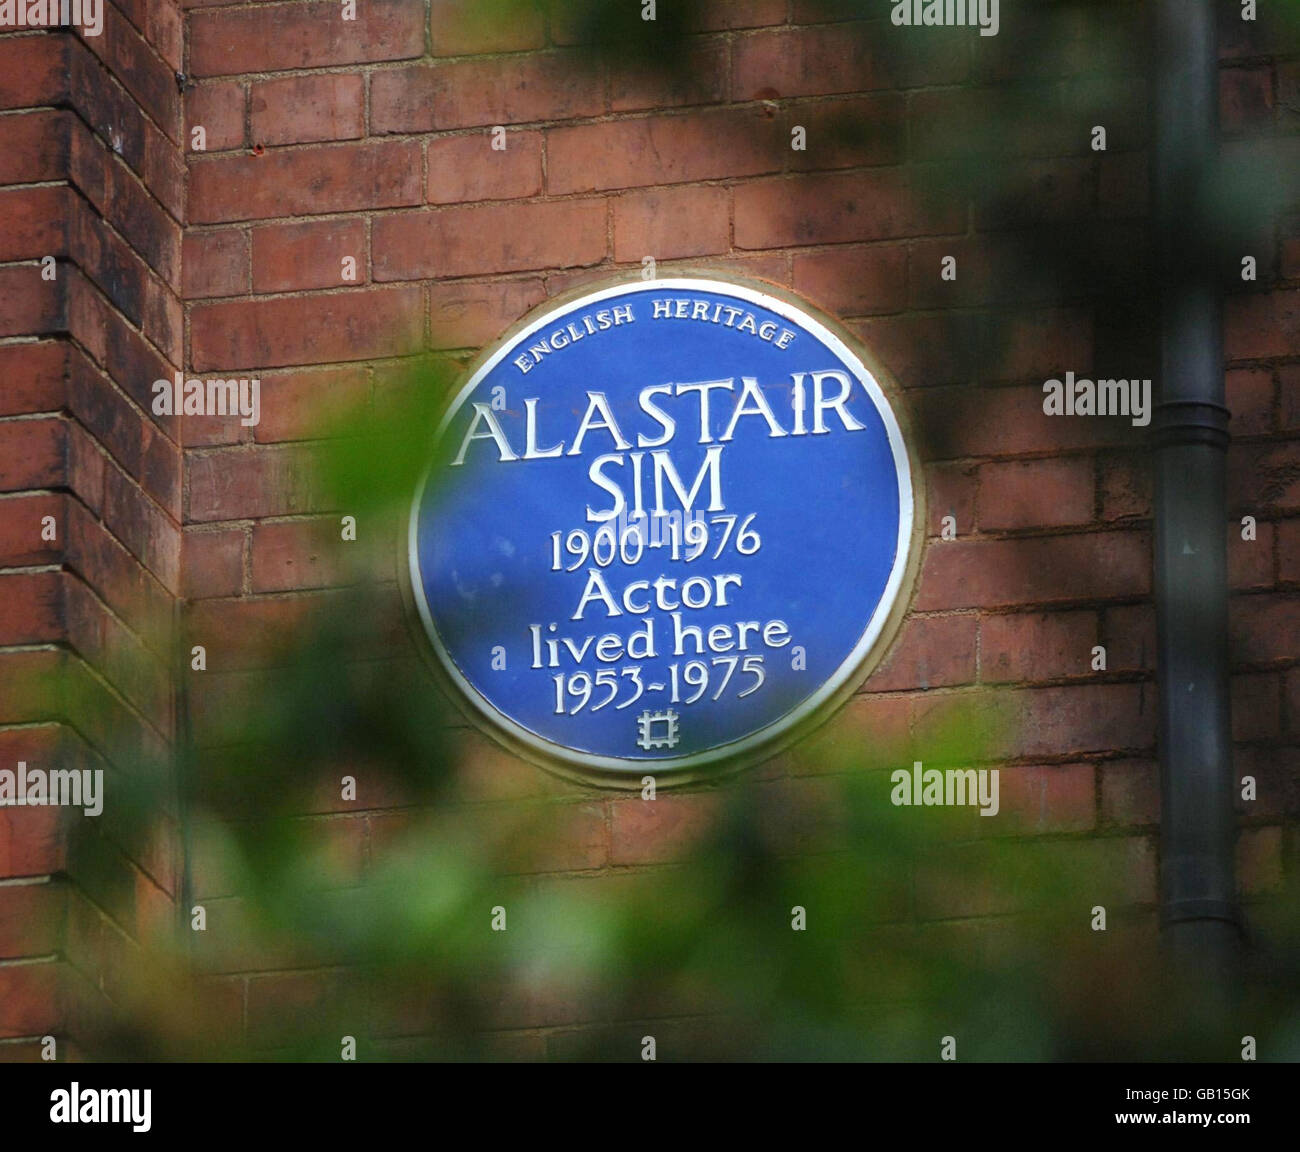 Eine englische Heritage Blue Plakette in der ehemaligen Residenz des legendären Schauspielers Alastair SIM, die heute in Frognal Gardens, North London, enthüllt wurde. Stockfoto